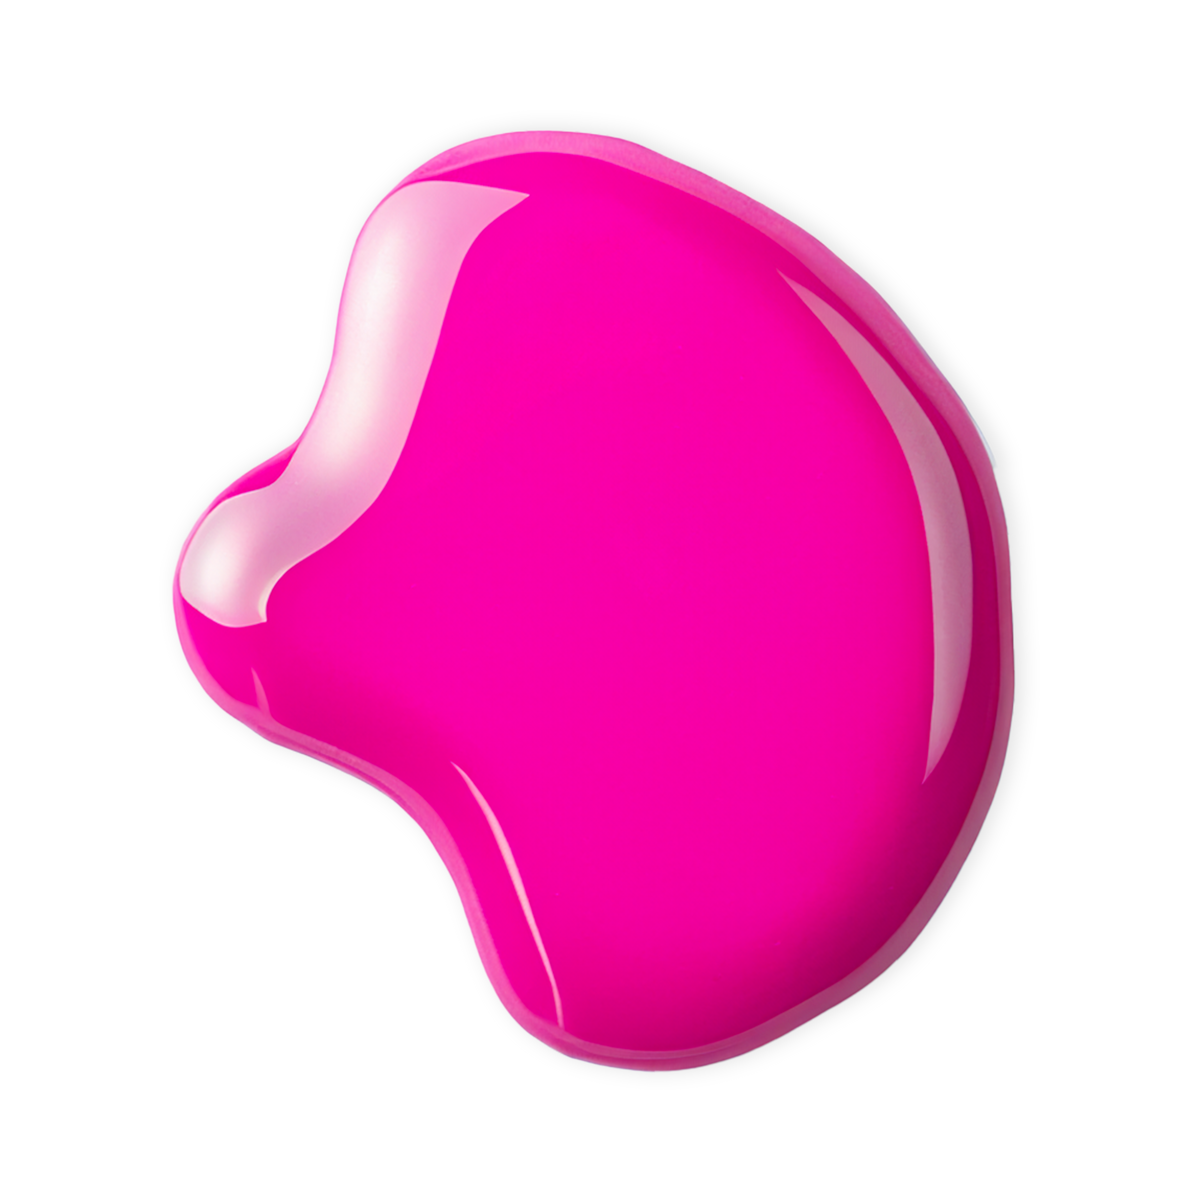 inuwet water based nail polish - fluoro pink bubblegum